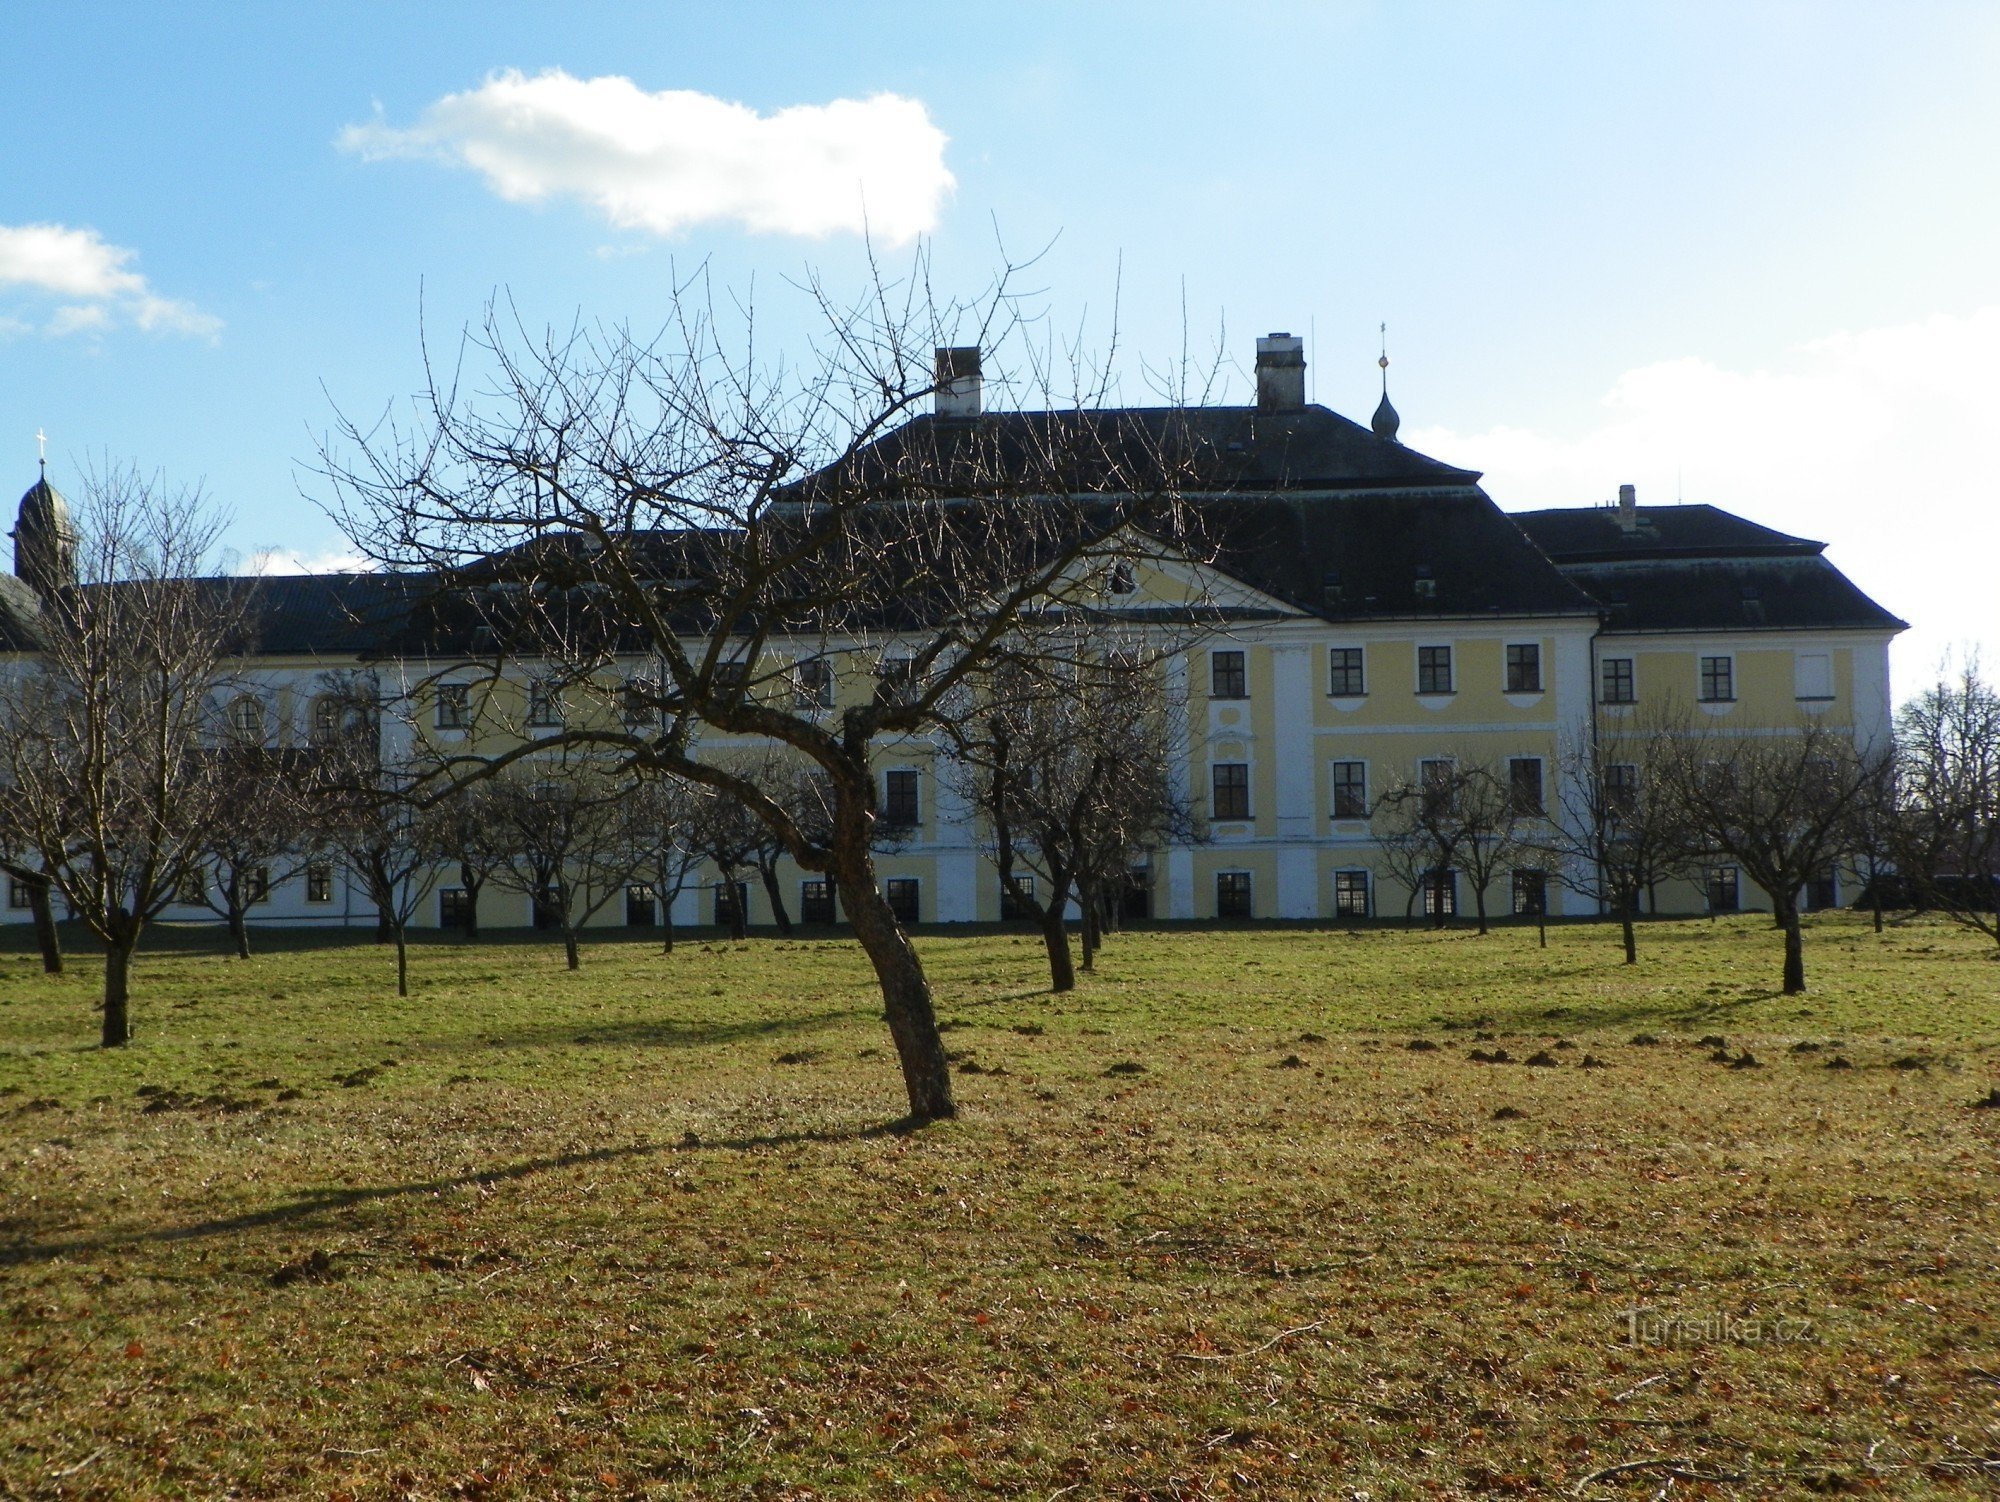 Khu vườn lâu đài Žďár